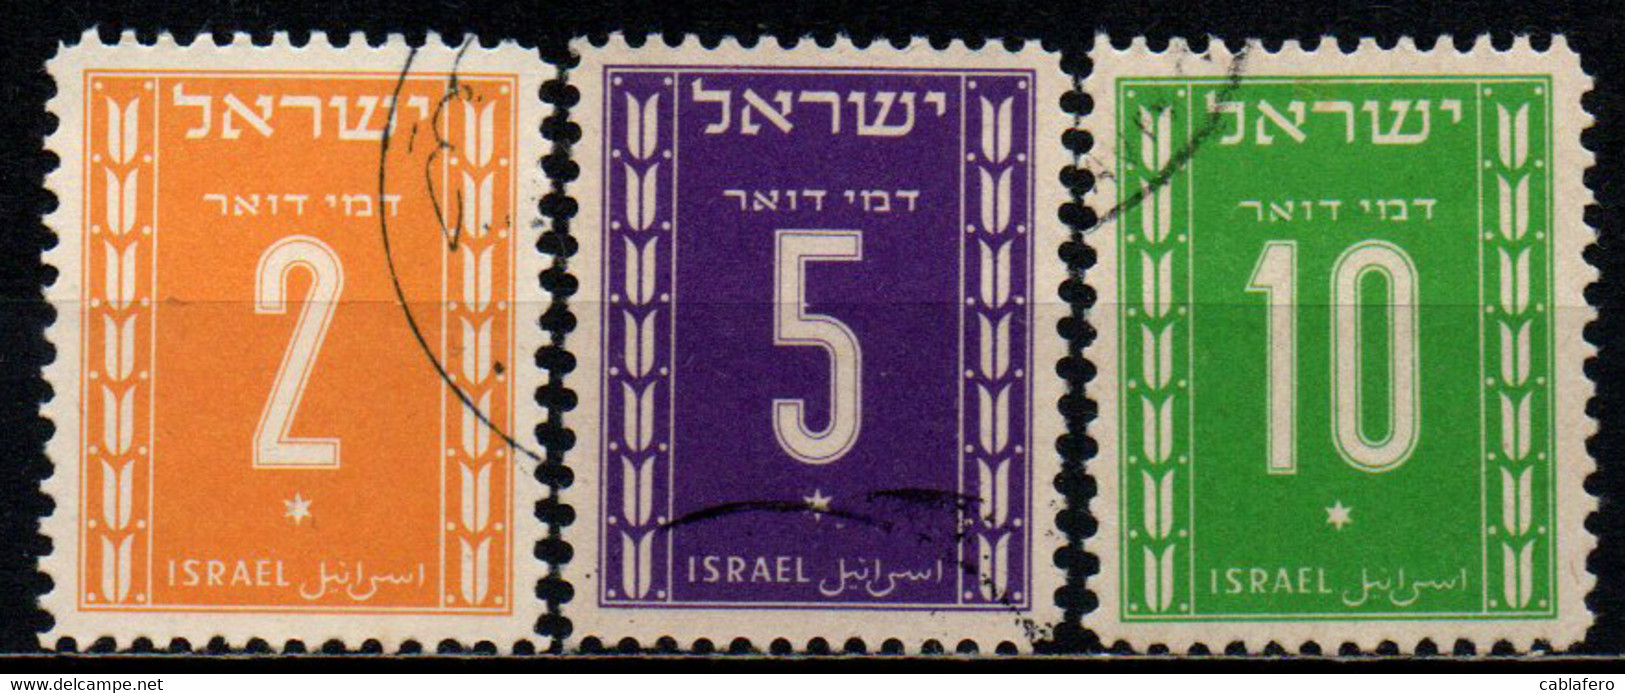 ISRAELE - 1949 - Numeral - USATI - Postage Due